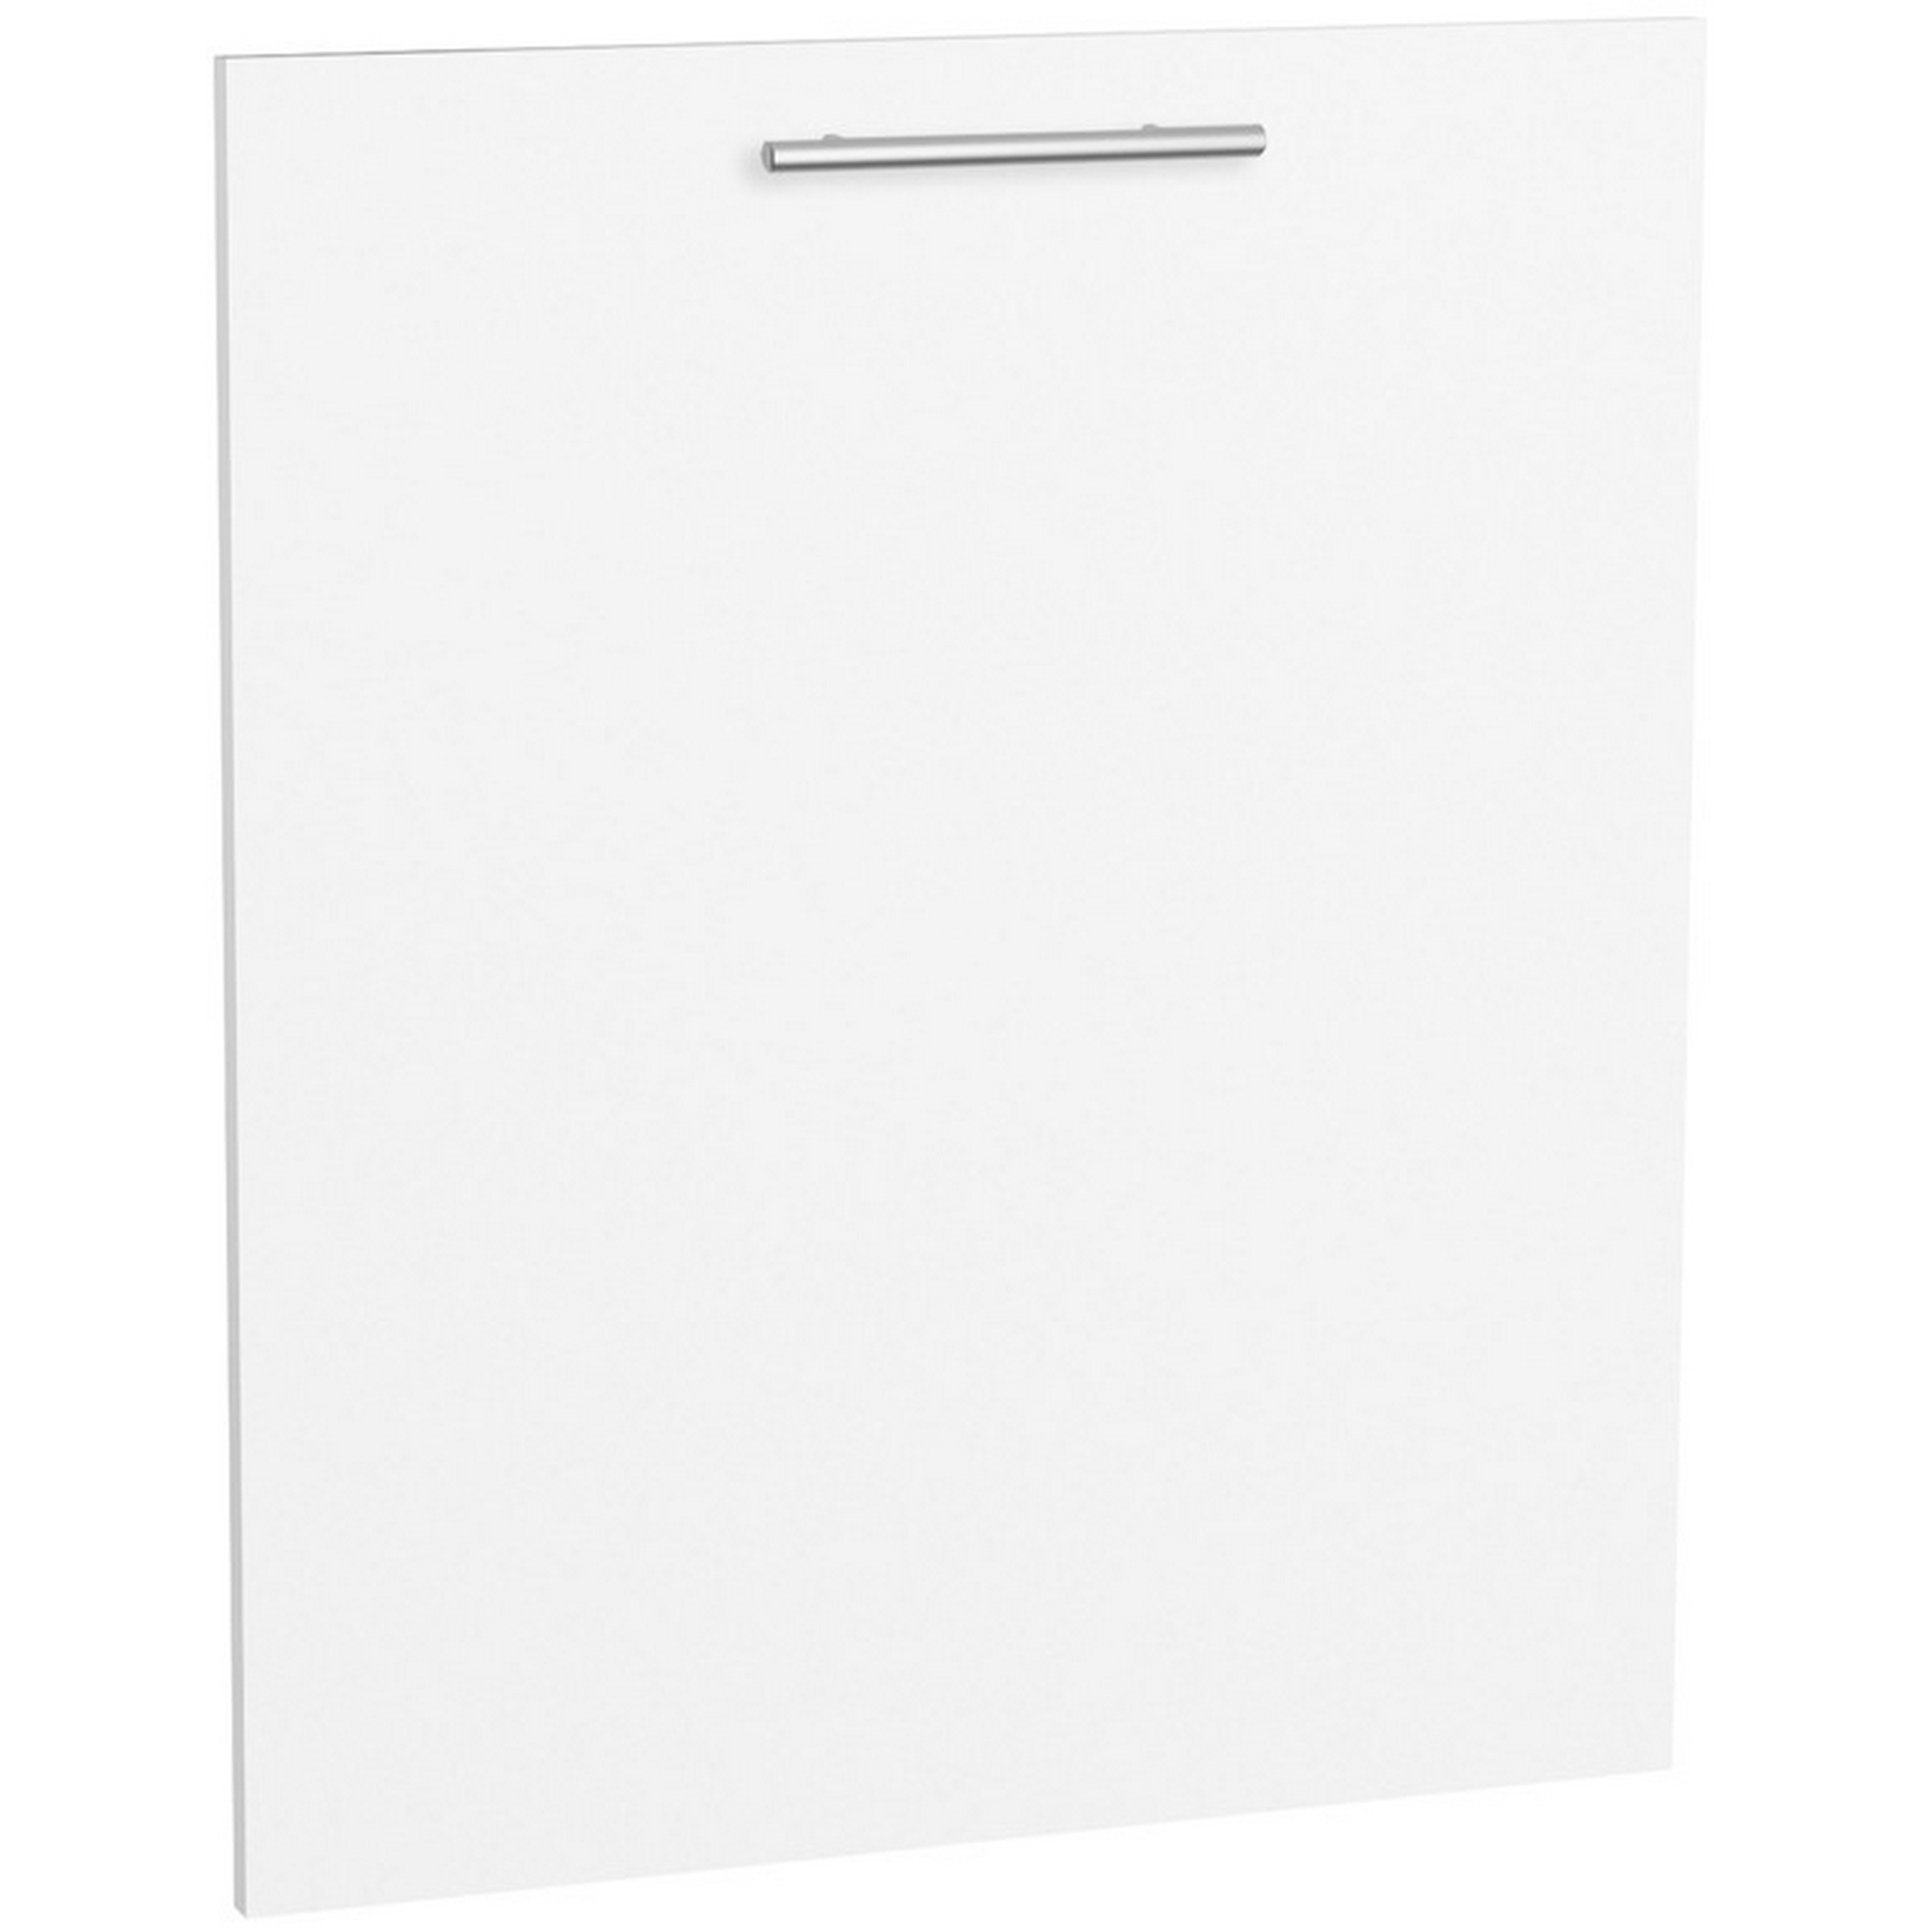 Tür für vollintegrierten Geschirrspüler 'Optikomfort Bengt932' weiß 59,6 x 70 x 1,6 cm + product picture